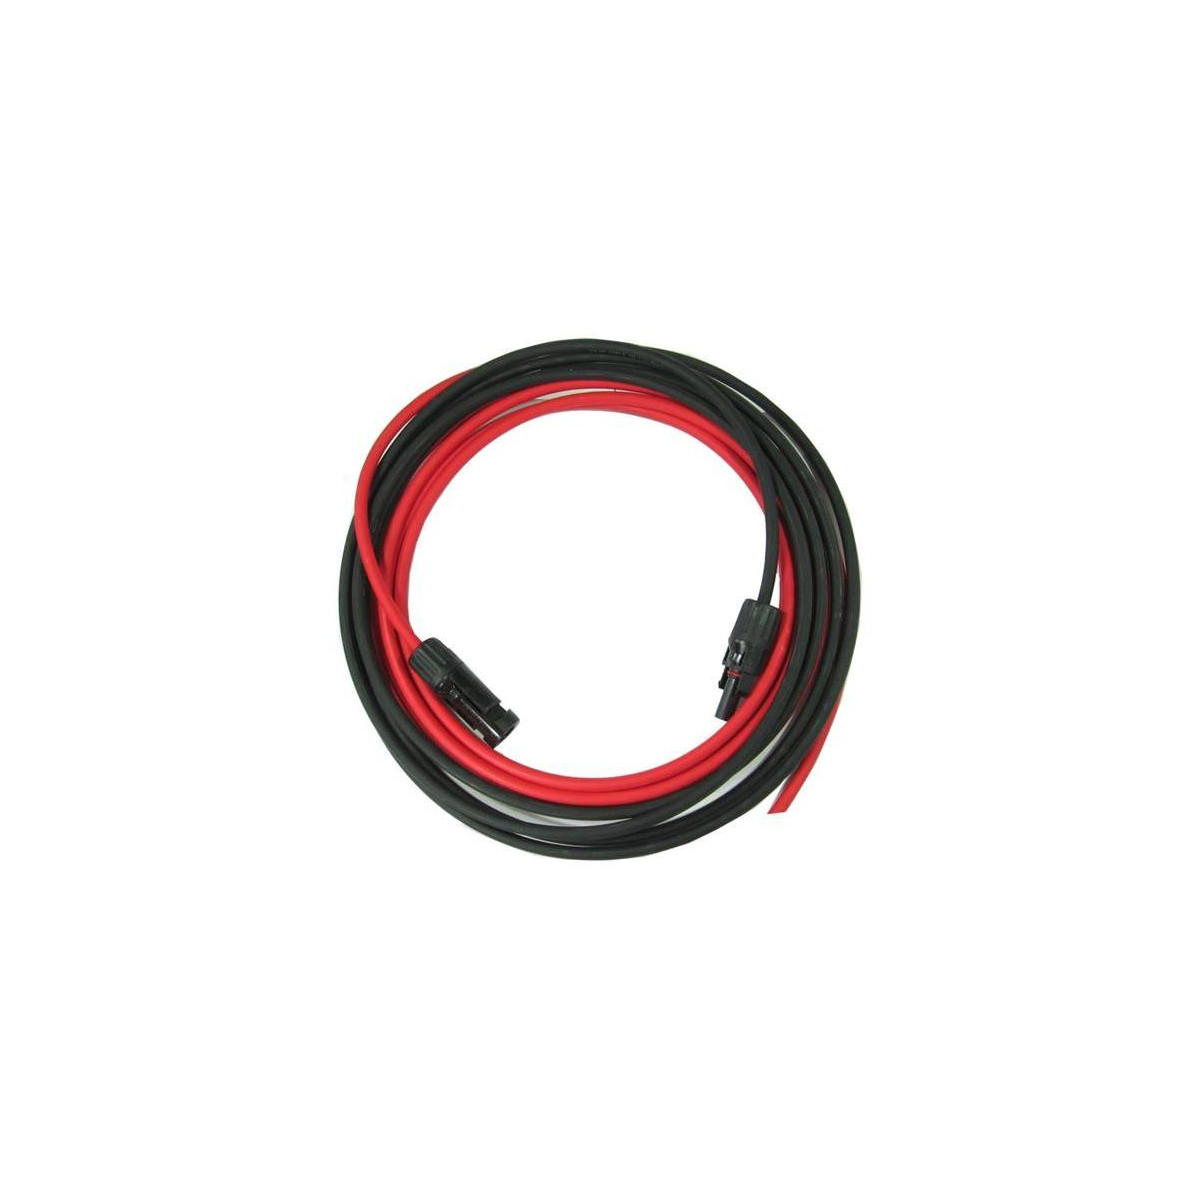 More about Solární kabel 4mm2, červený+černý s konektory MC4, 10m